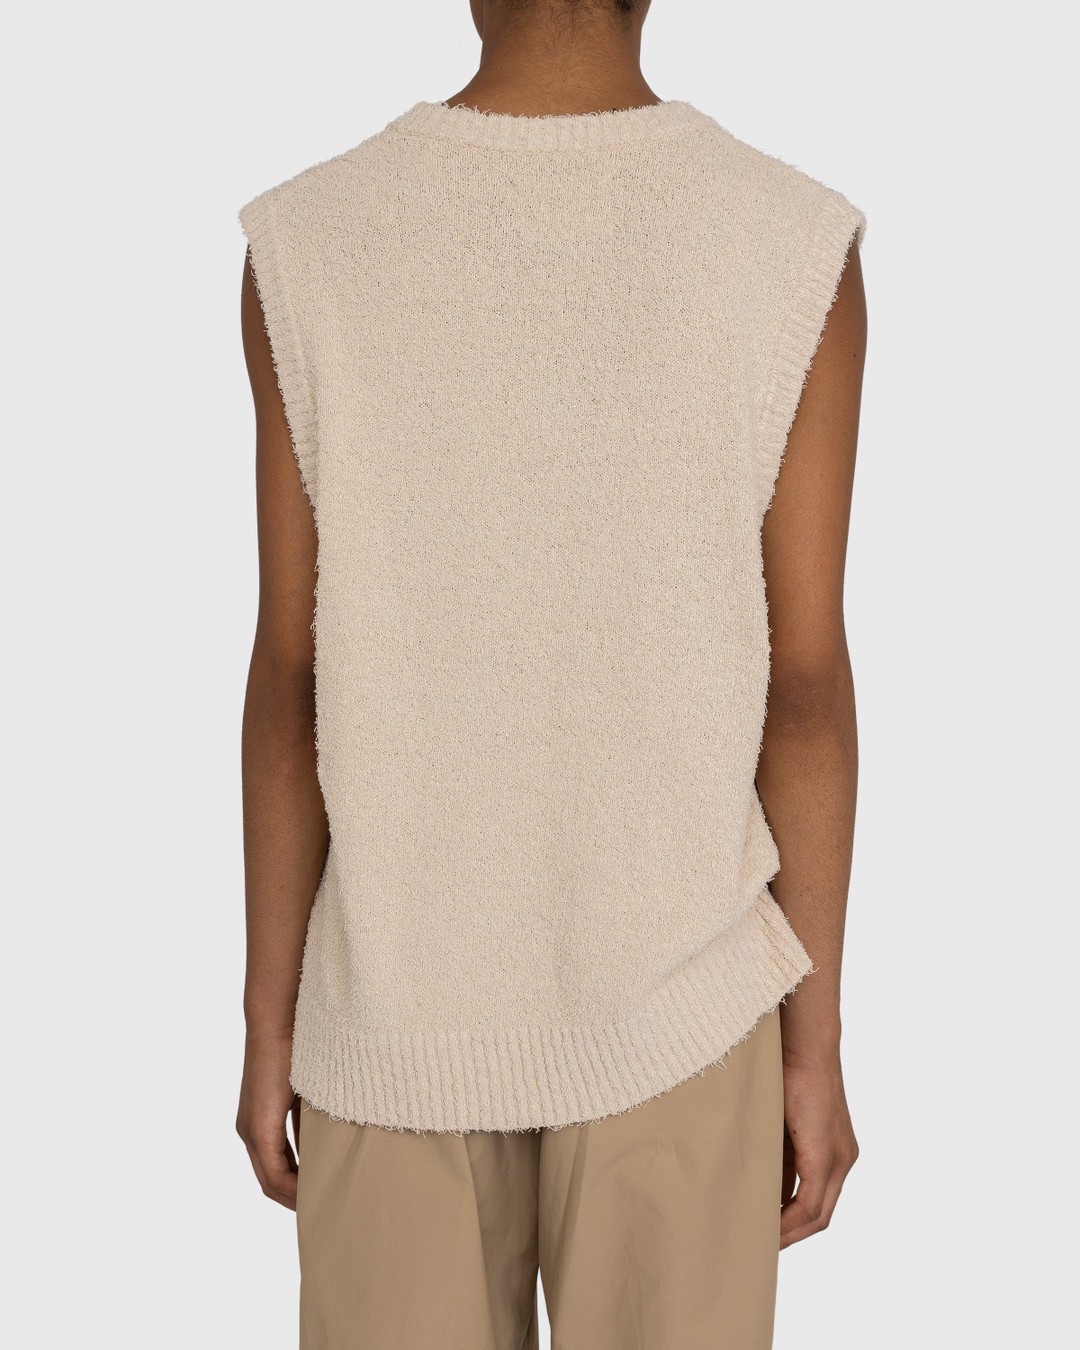 Highsnobiety – V-Neck Sweater Vest Beige - Gilets - Beige - Image 3